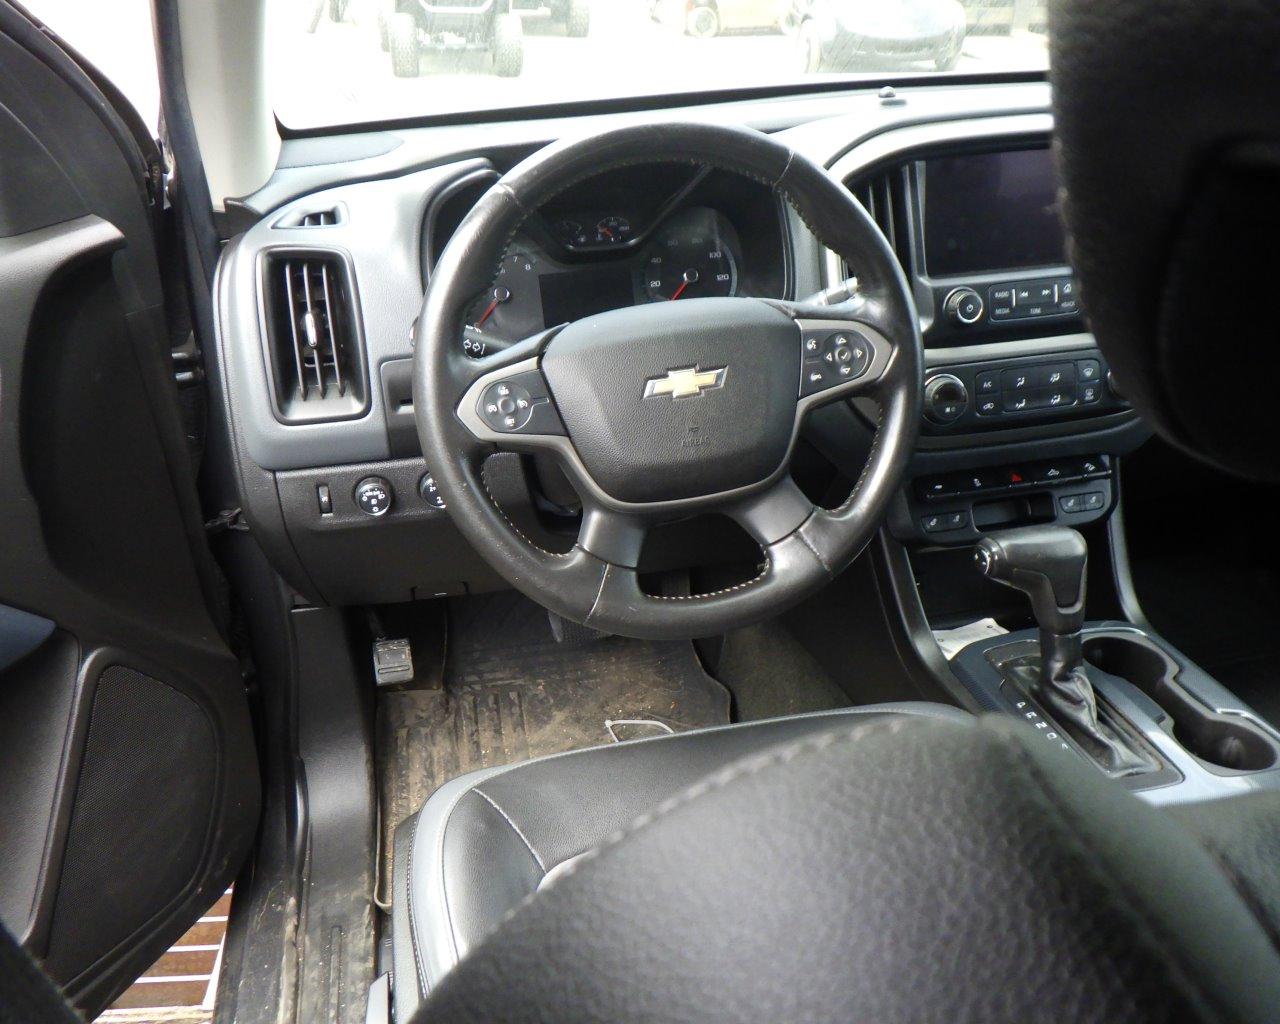 2016 Chevrolet Colorado Ext Cab   w/Tonneau Cover   4x4 s/n:124685